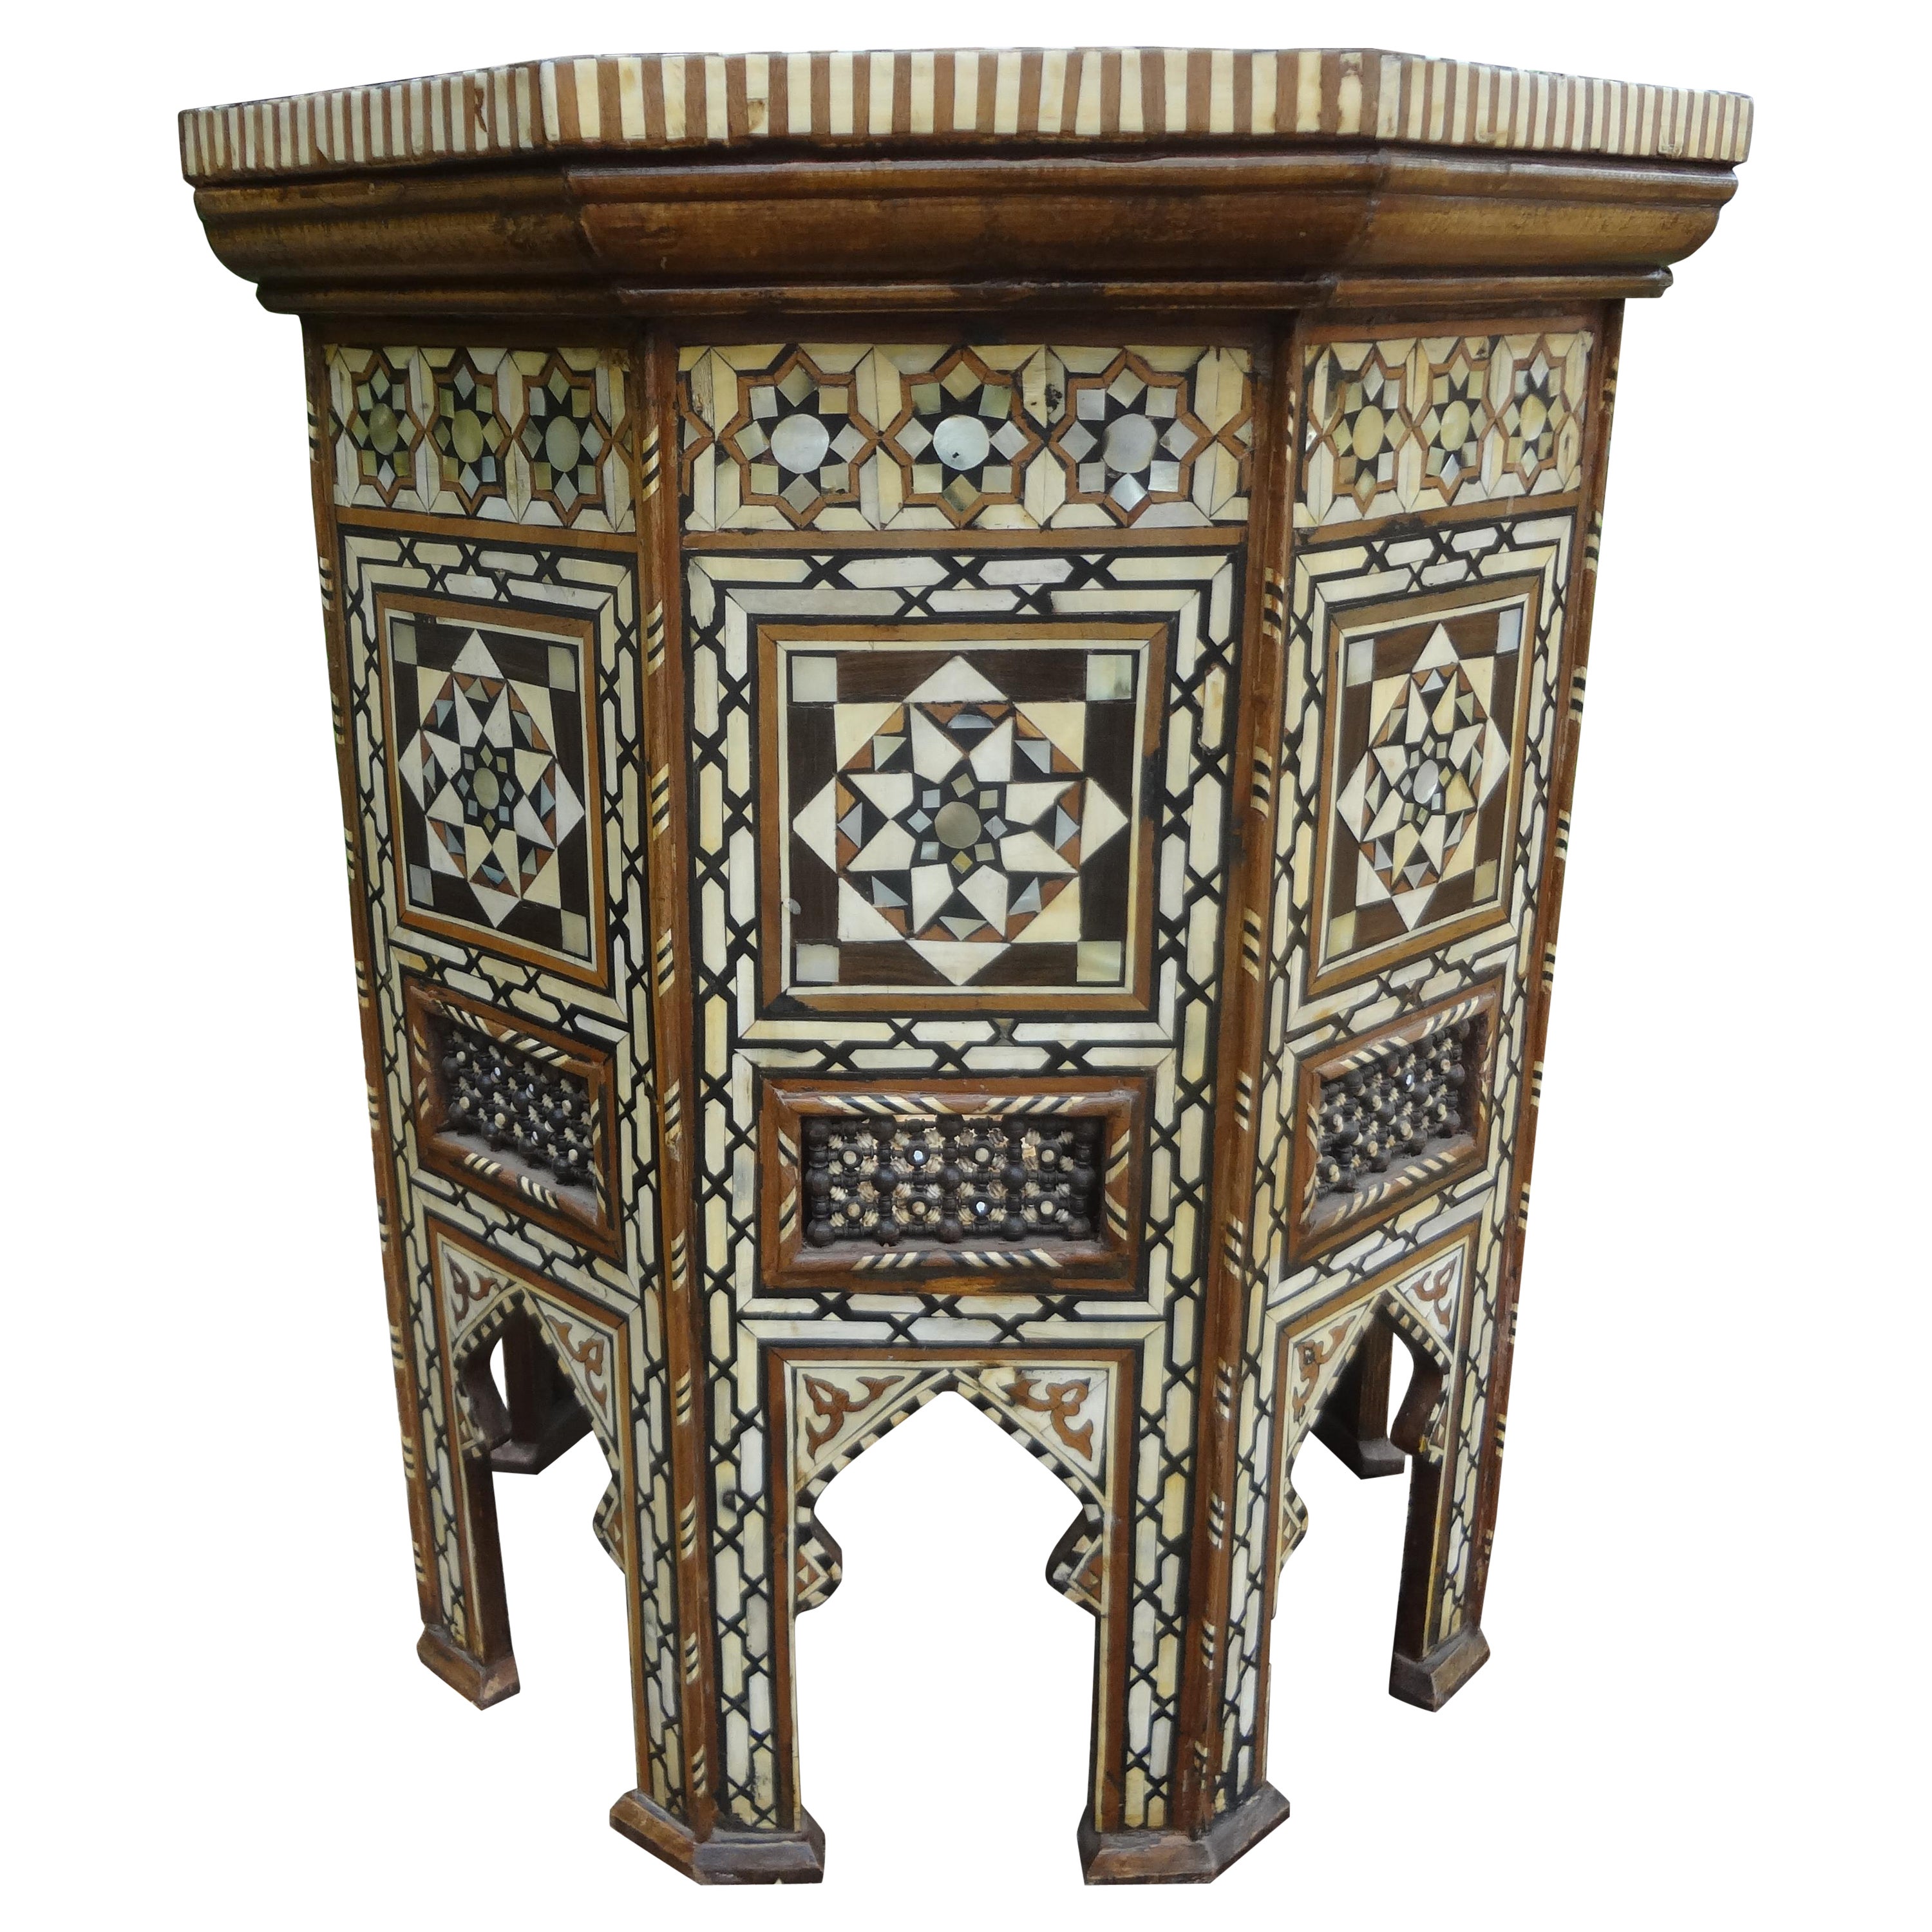 Großer antiker marokkanischer achteckiger Tisch mit Intarsien im arabischen Stil